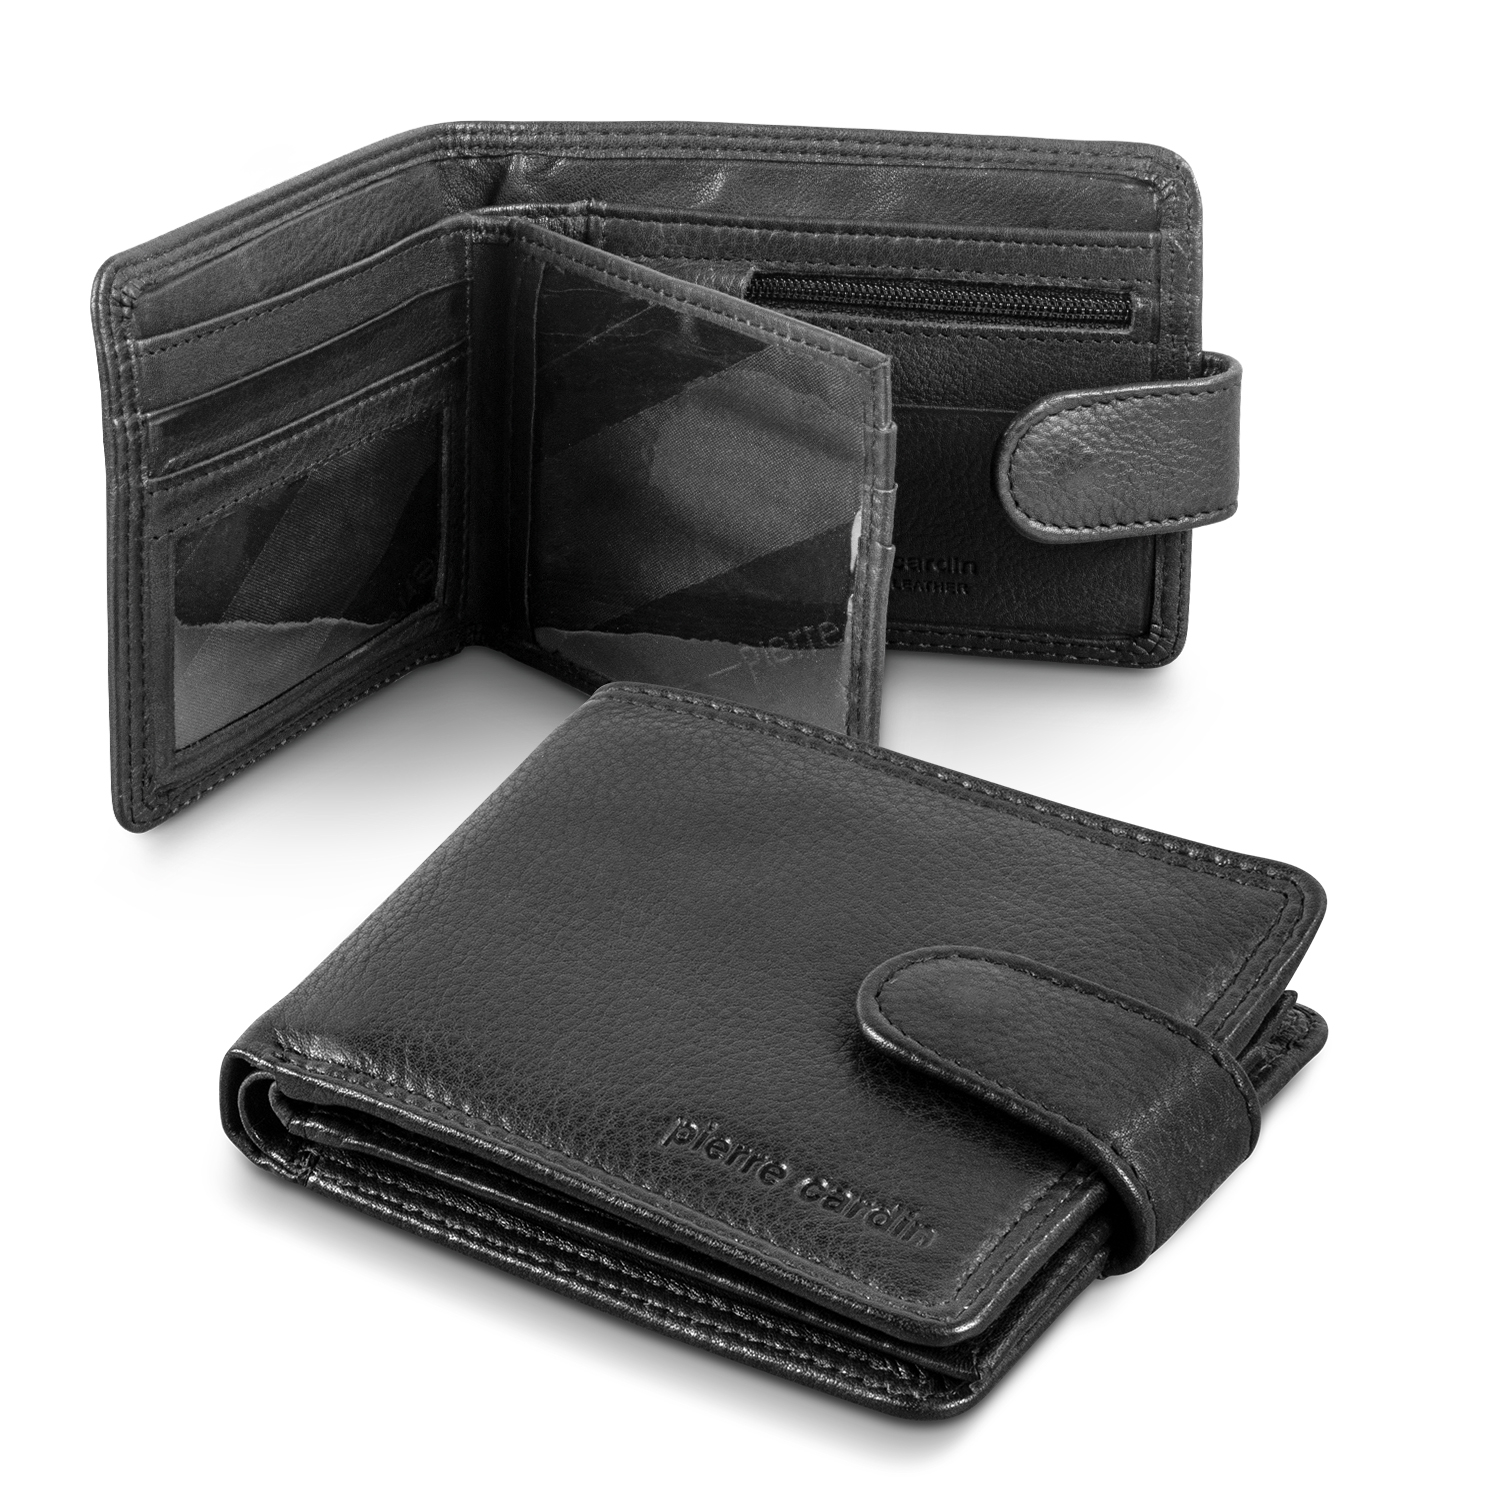 TRENDS | Pierre Cardin Leather Wallet Belt Gift Set